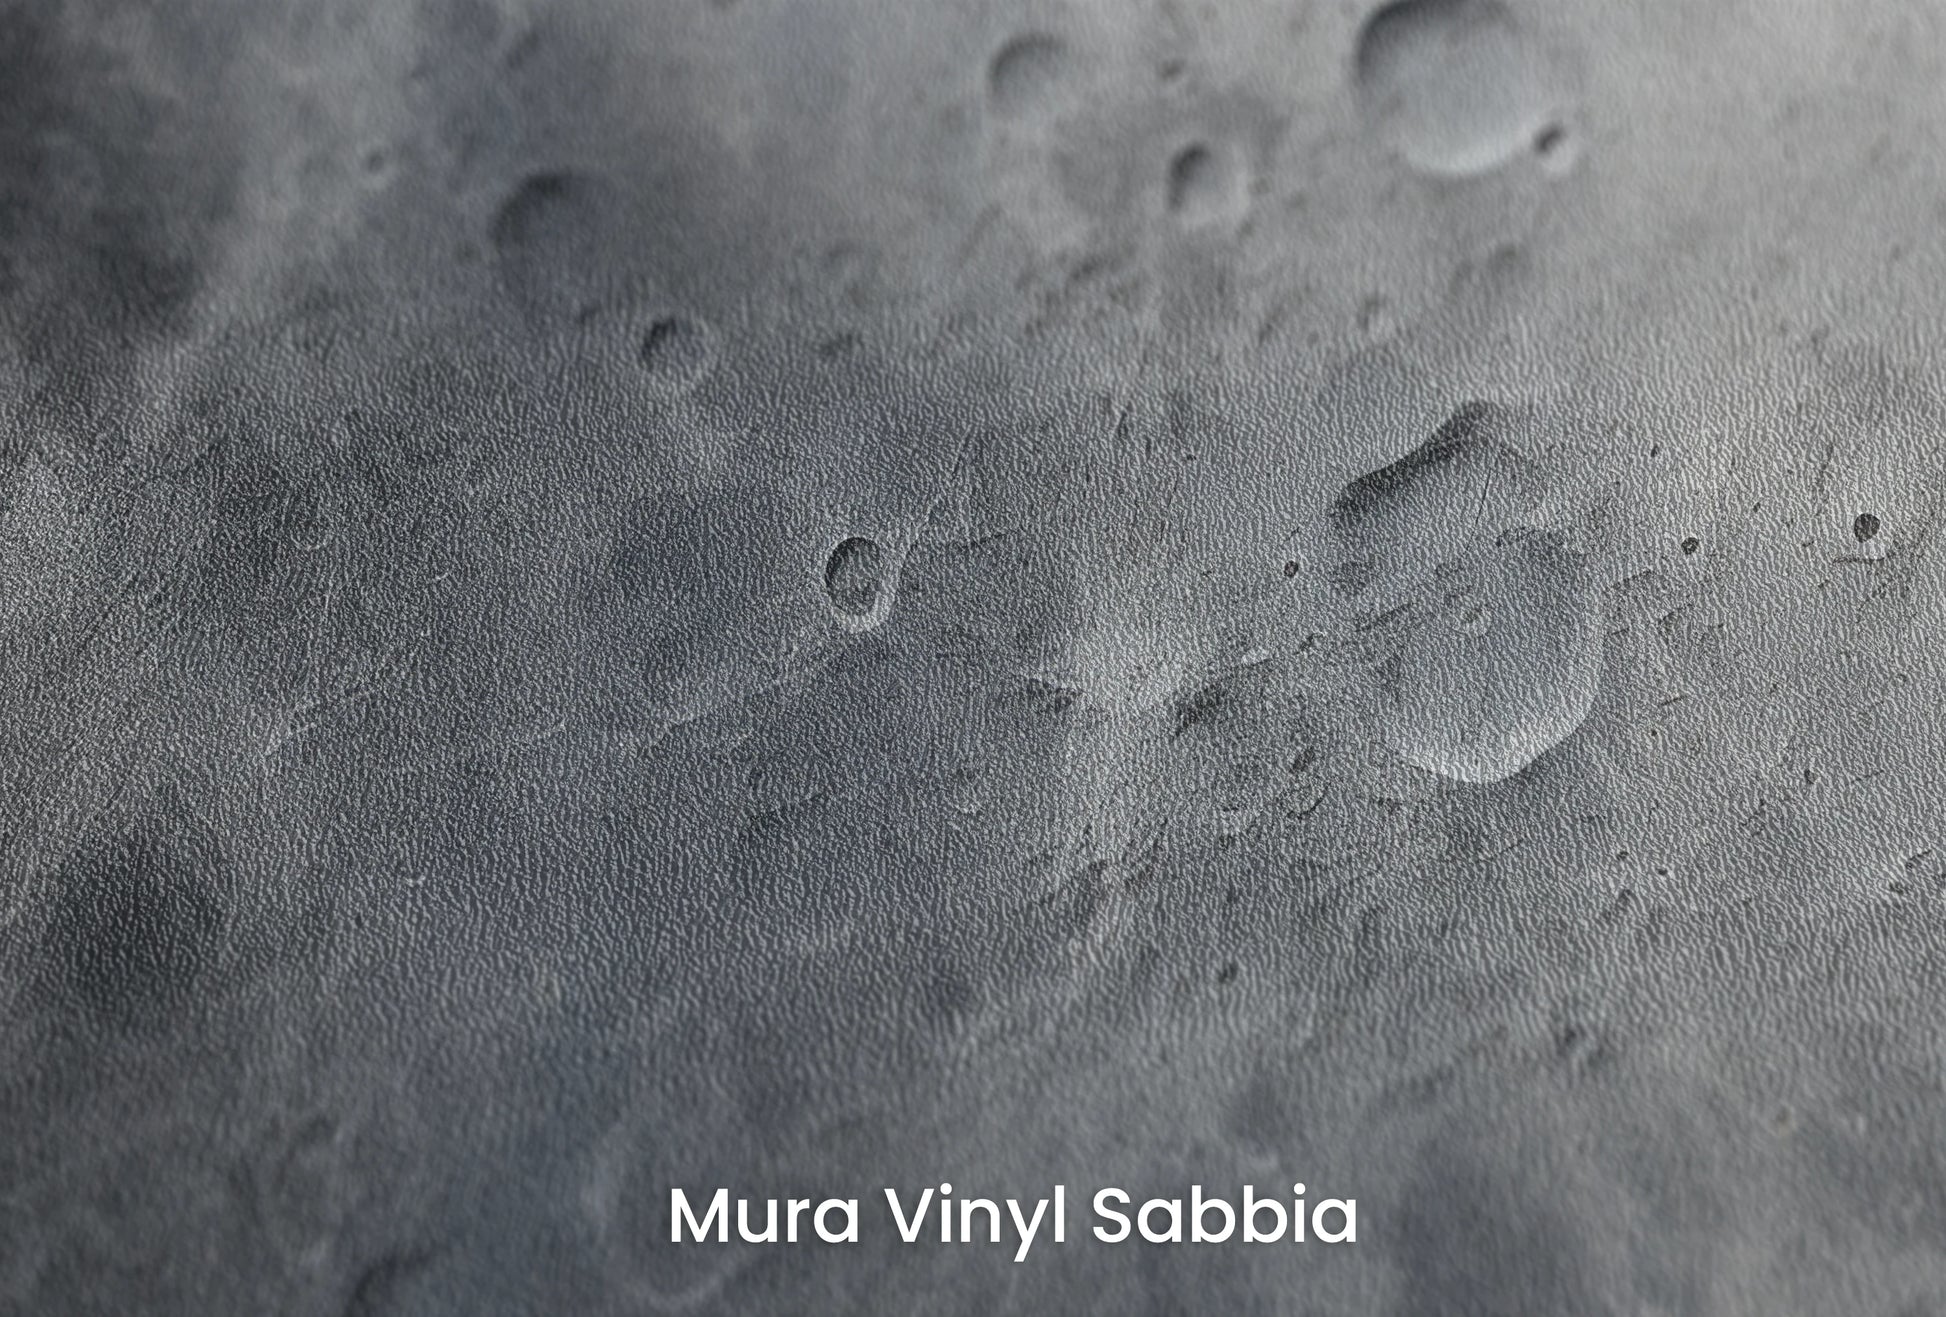 Zbliżenie na artystyczną fototapetę o nazwie Moon's Monochrome #2 na podłożu Mura Vinyl Sabbia struktura grubego ziarna piasku.